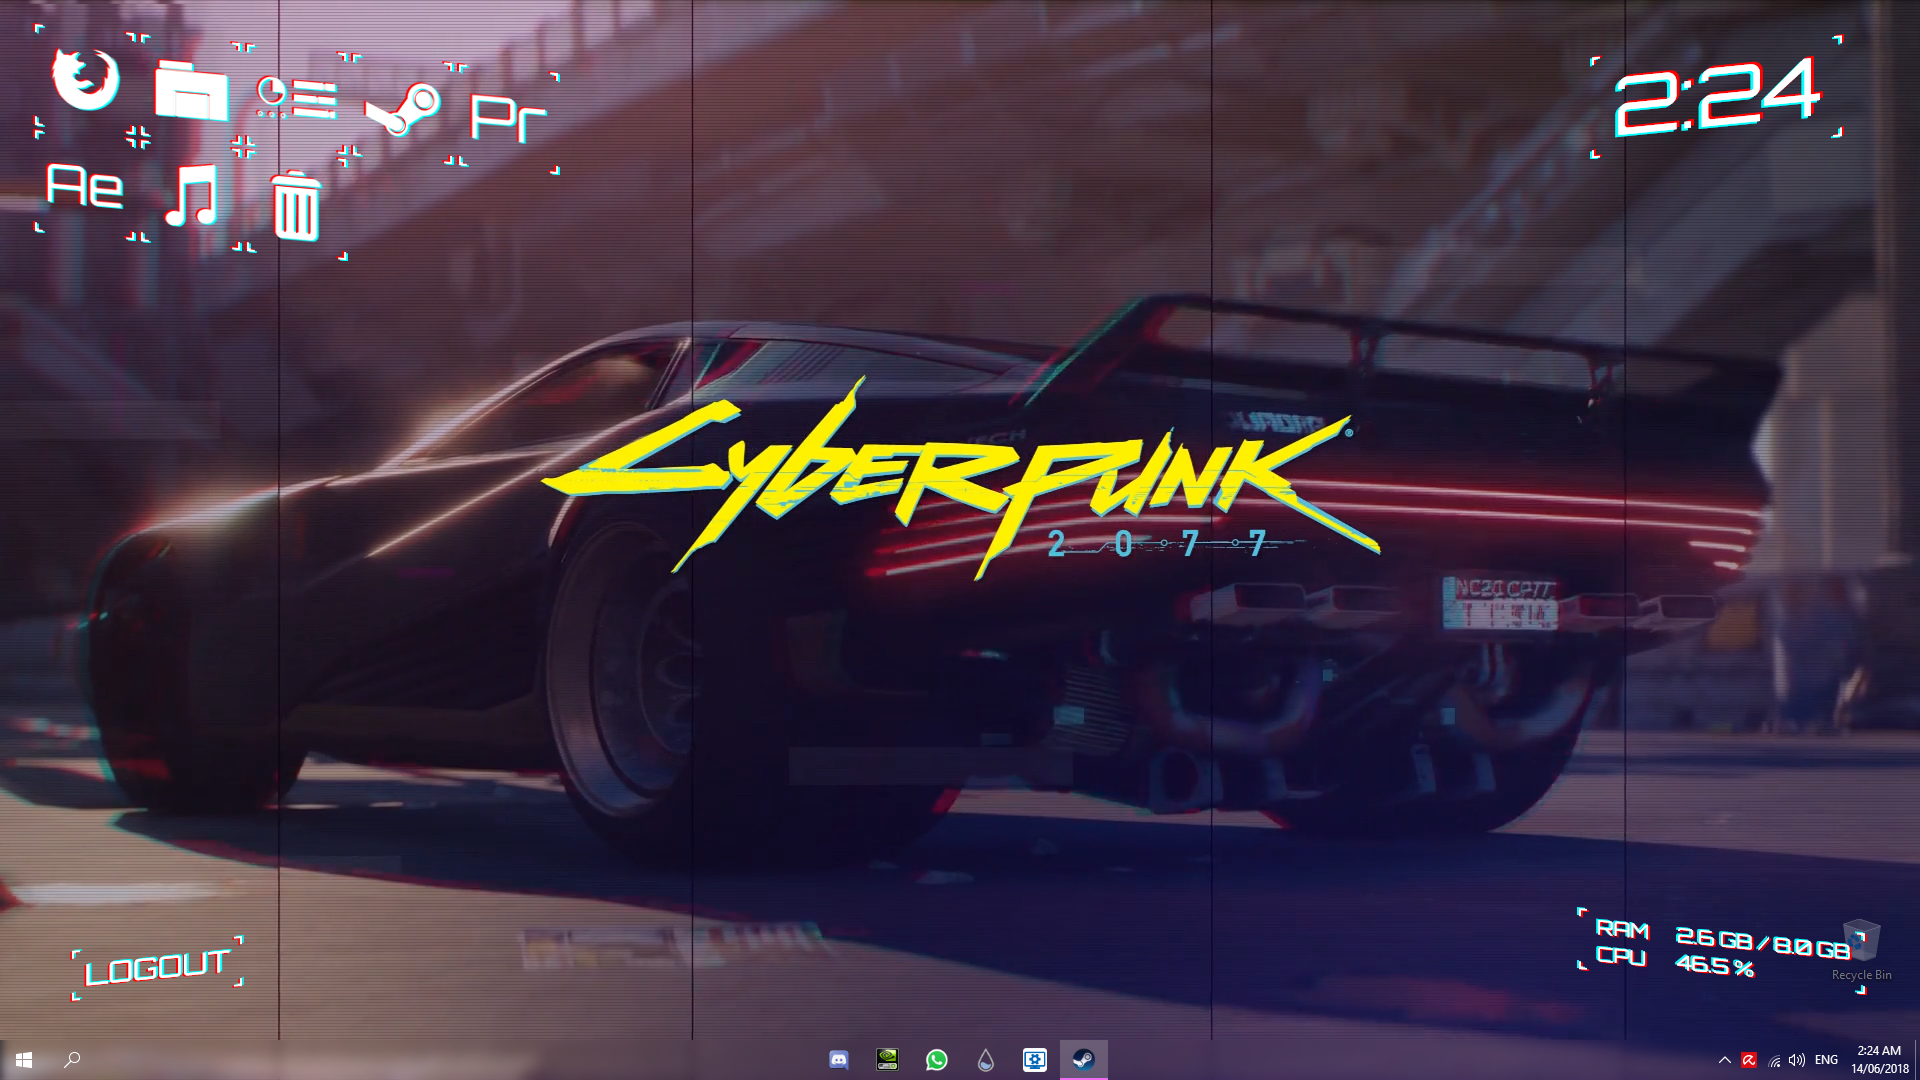 Cyberpunk 2077 , HD Wallpaper & Backgrounds